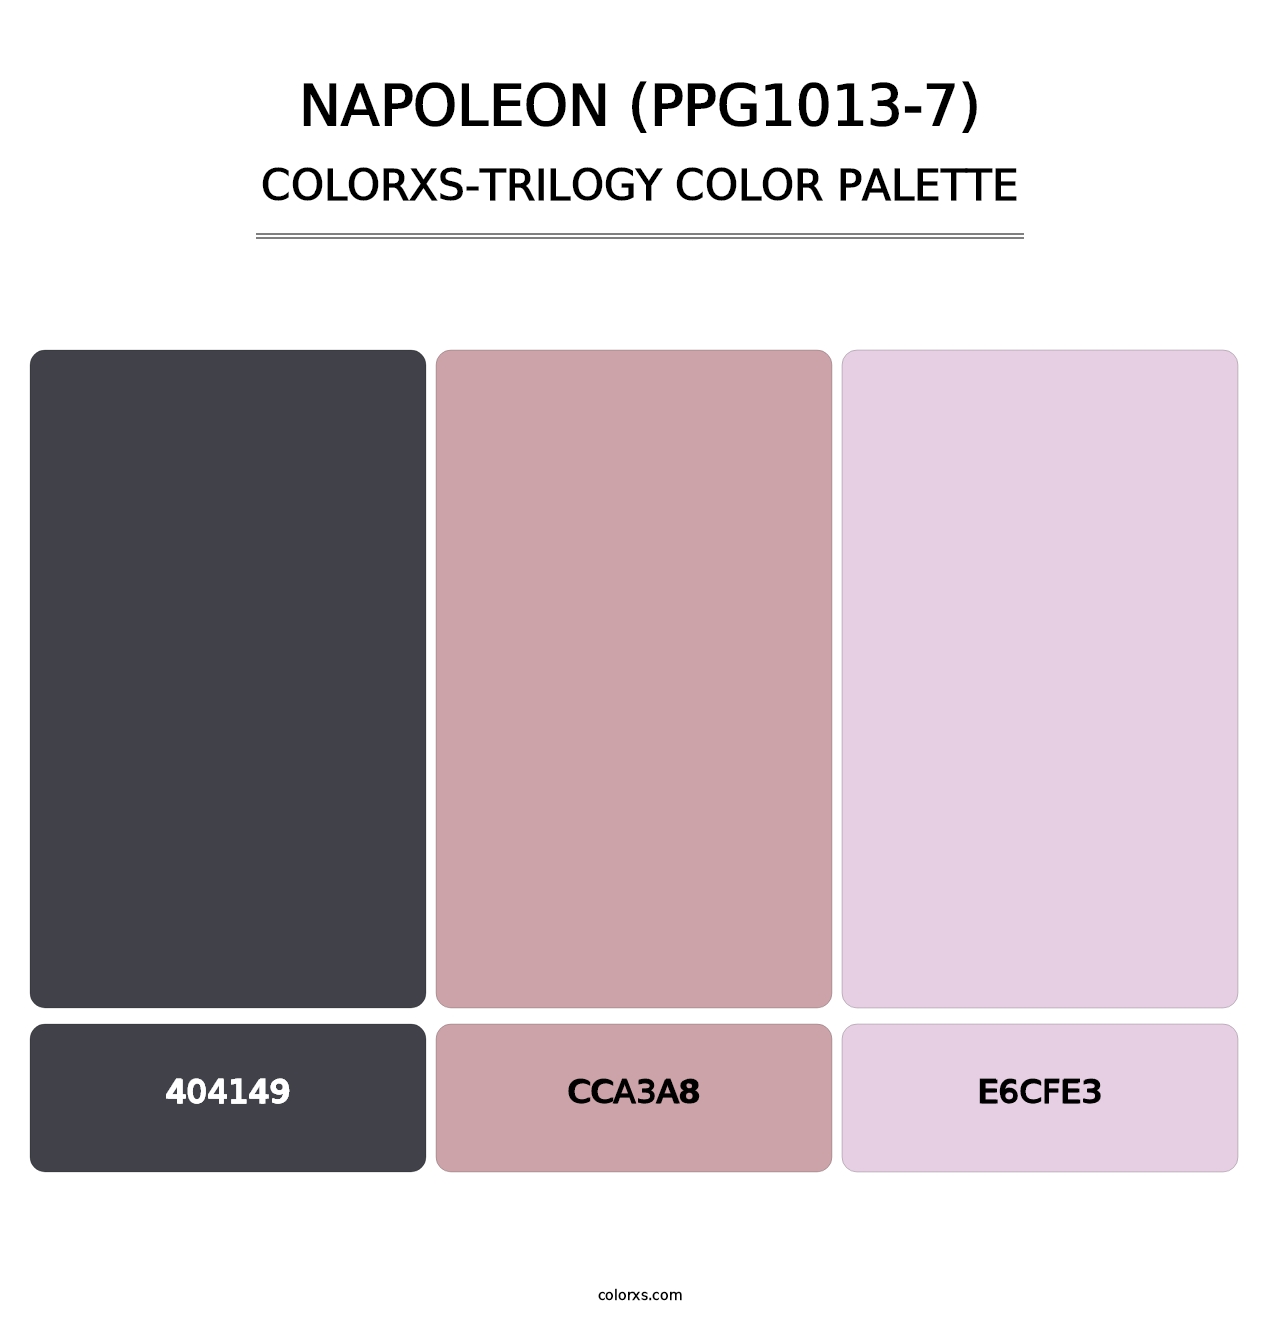 Napoleon (PPG1013-7) - Colorxs Trilogy Palette